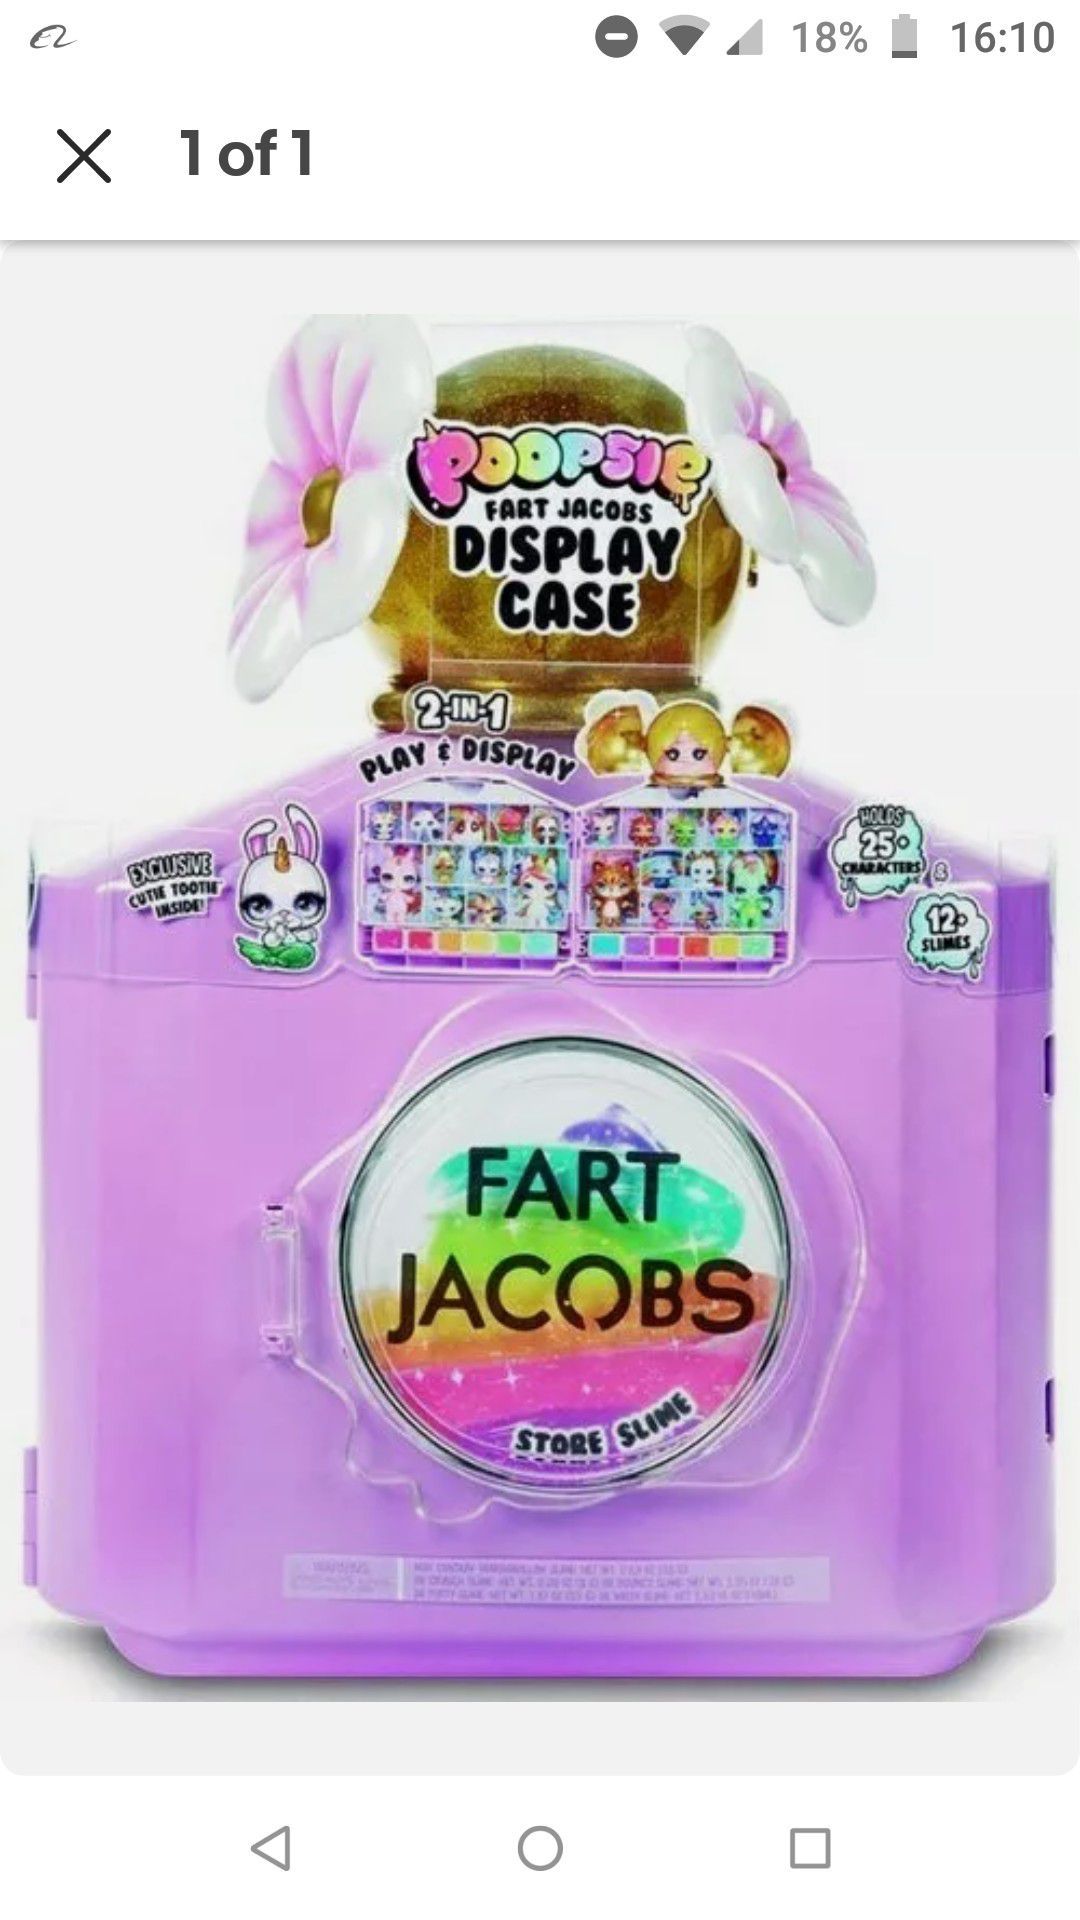 Poopsie Slime Surprise Fart Jacobs Cutie Tooties Flower Display Case